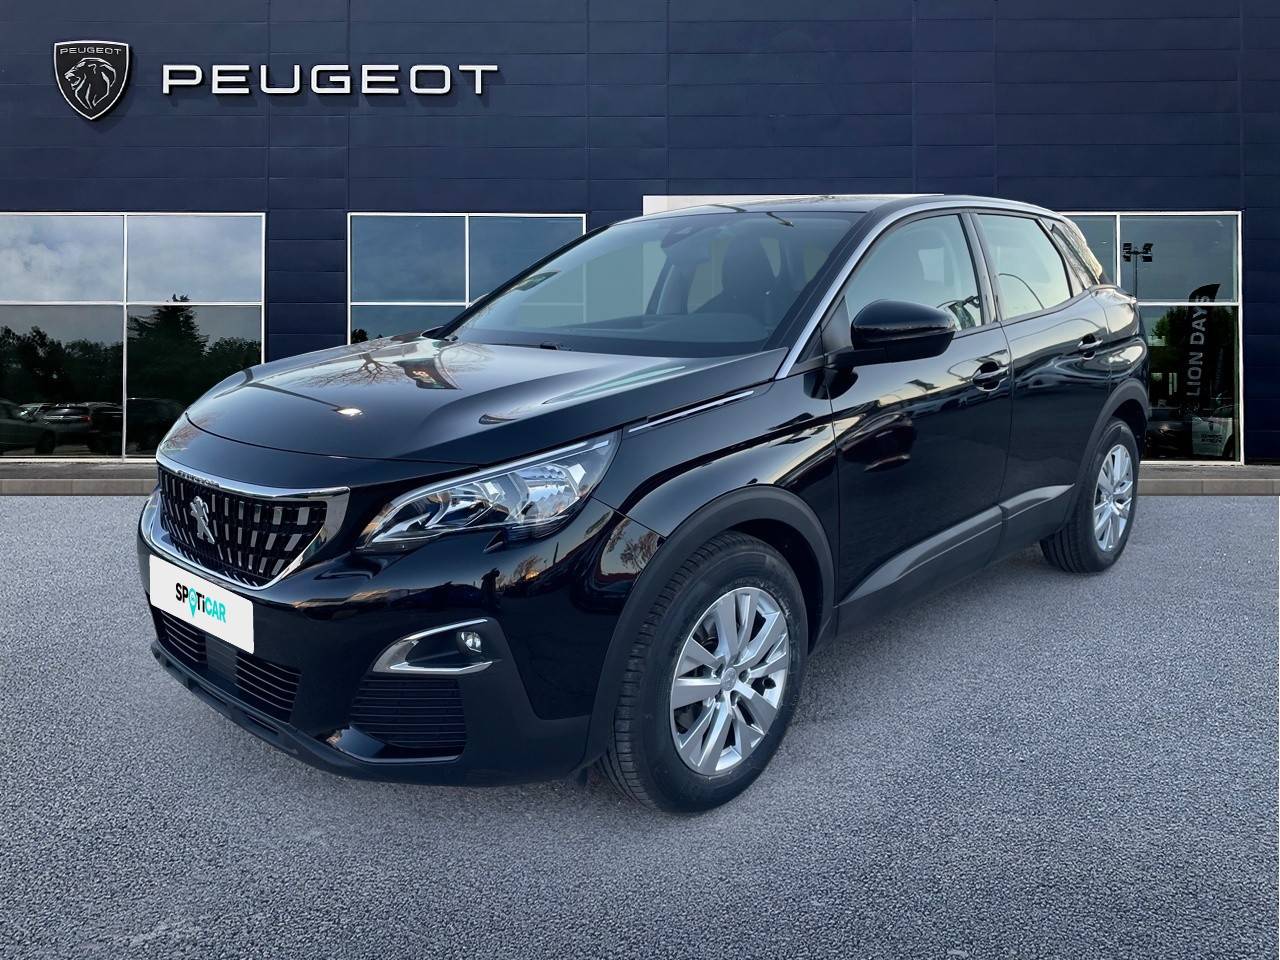 PEUGEOT 3008 | 3008 1.2 Puretech 130ch S&S BVM6 occasion - Peugeot Pertuis